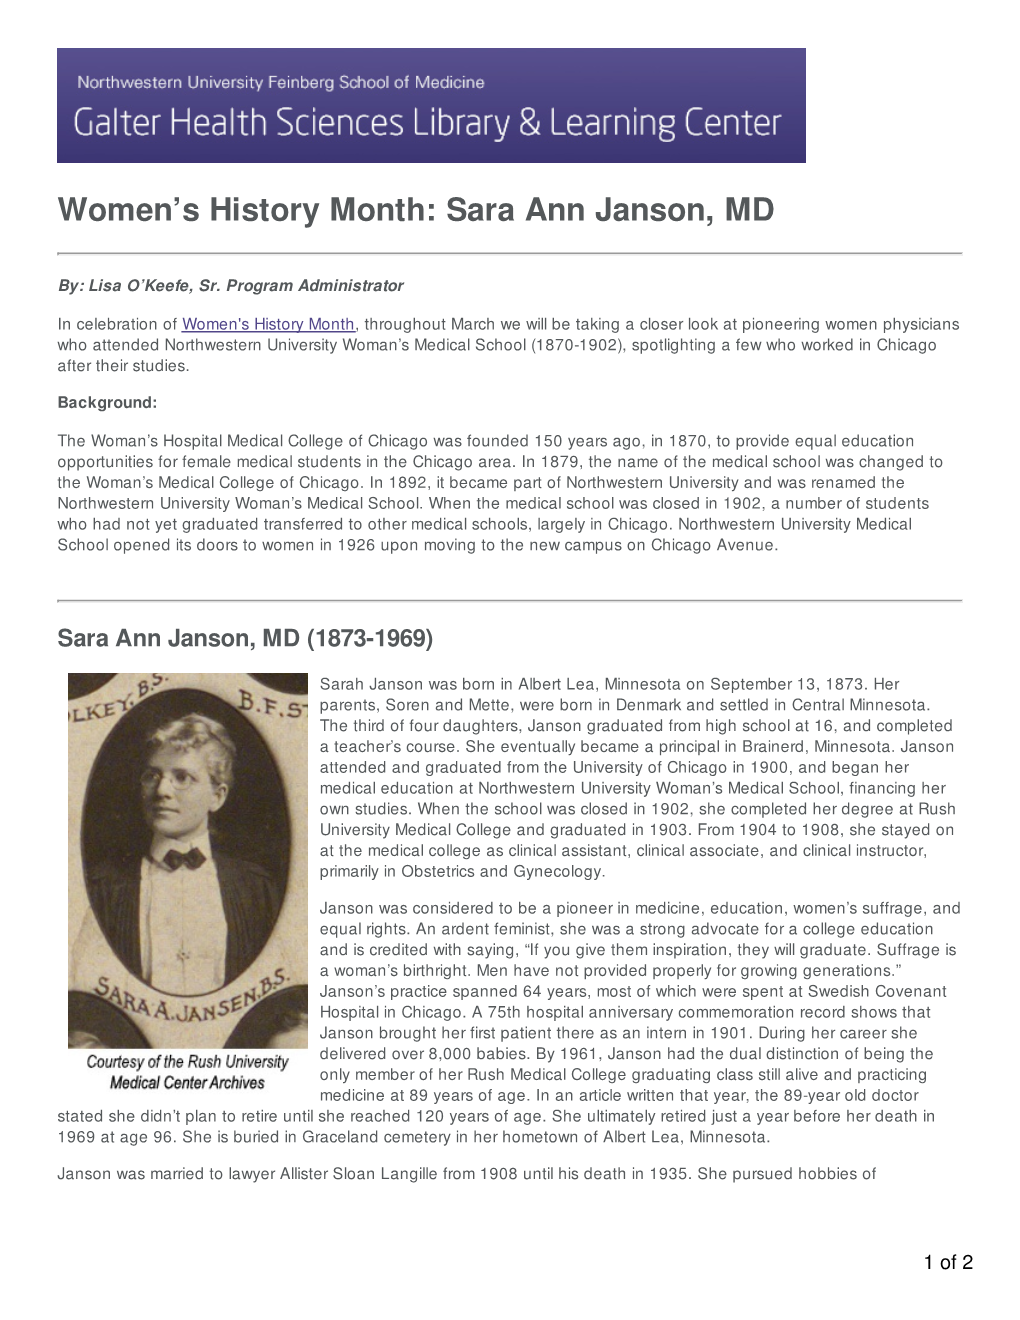 Sara Ann Janson, MD